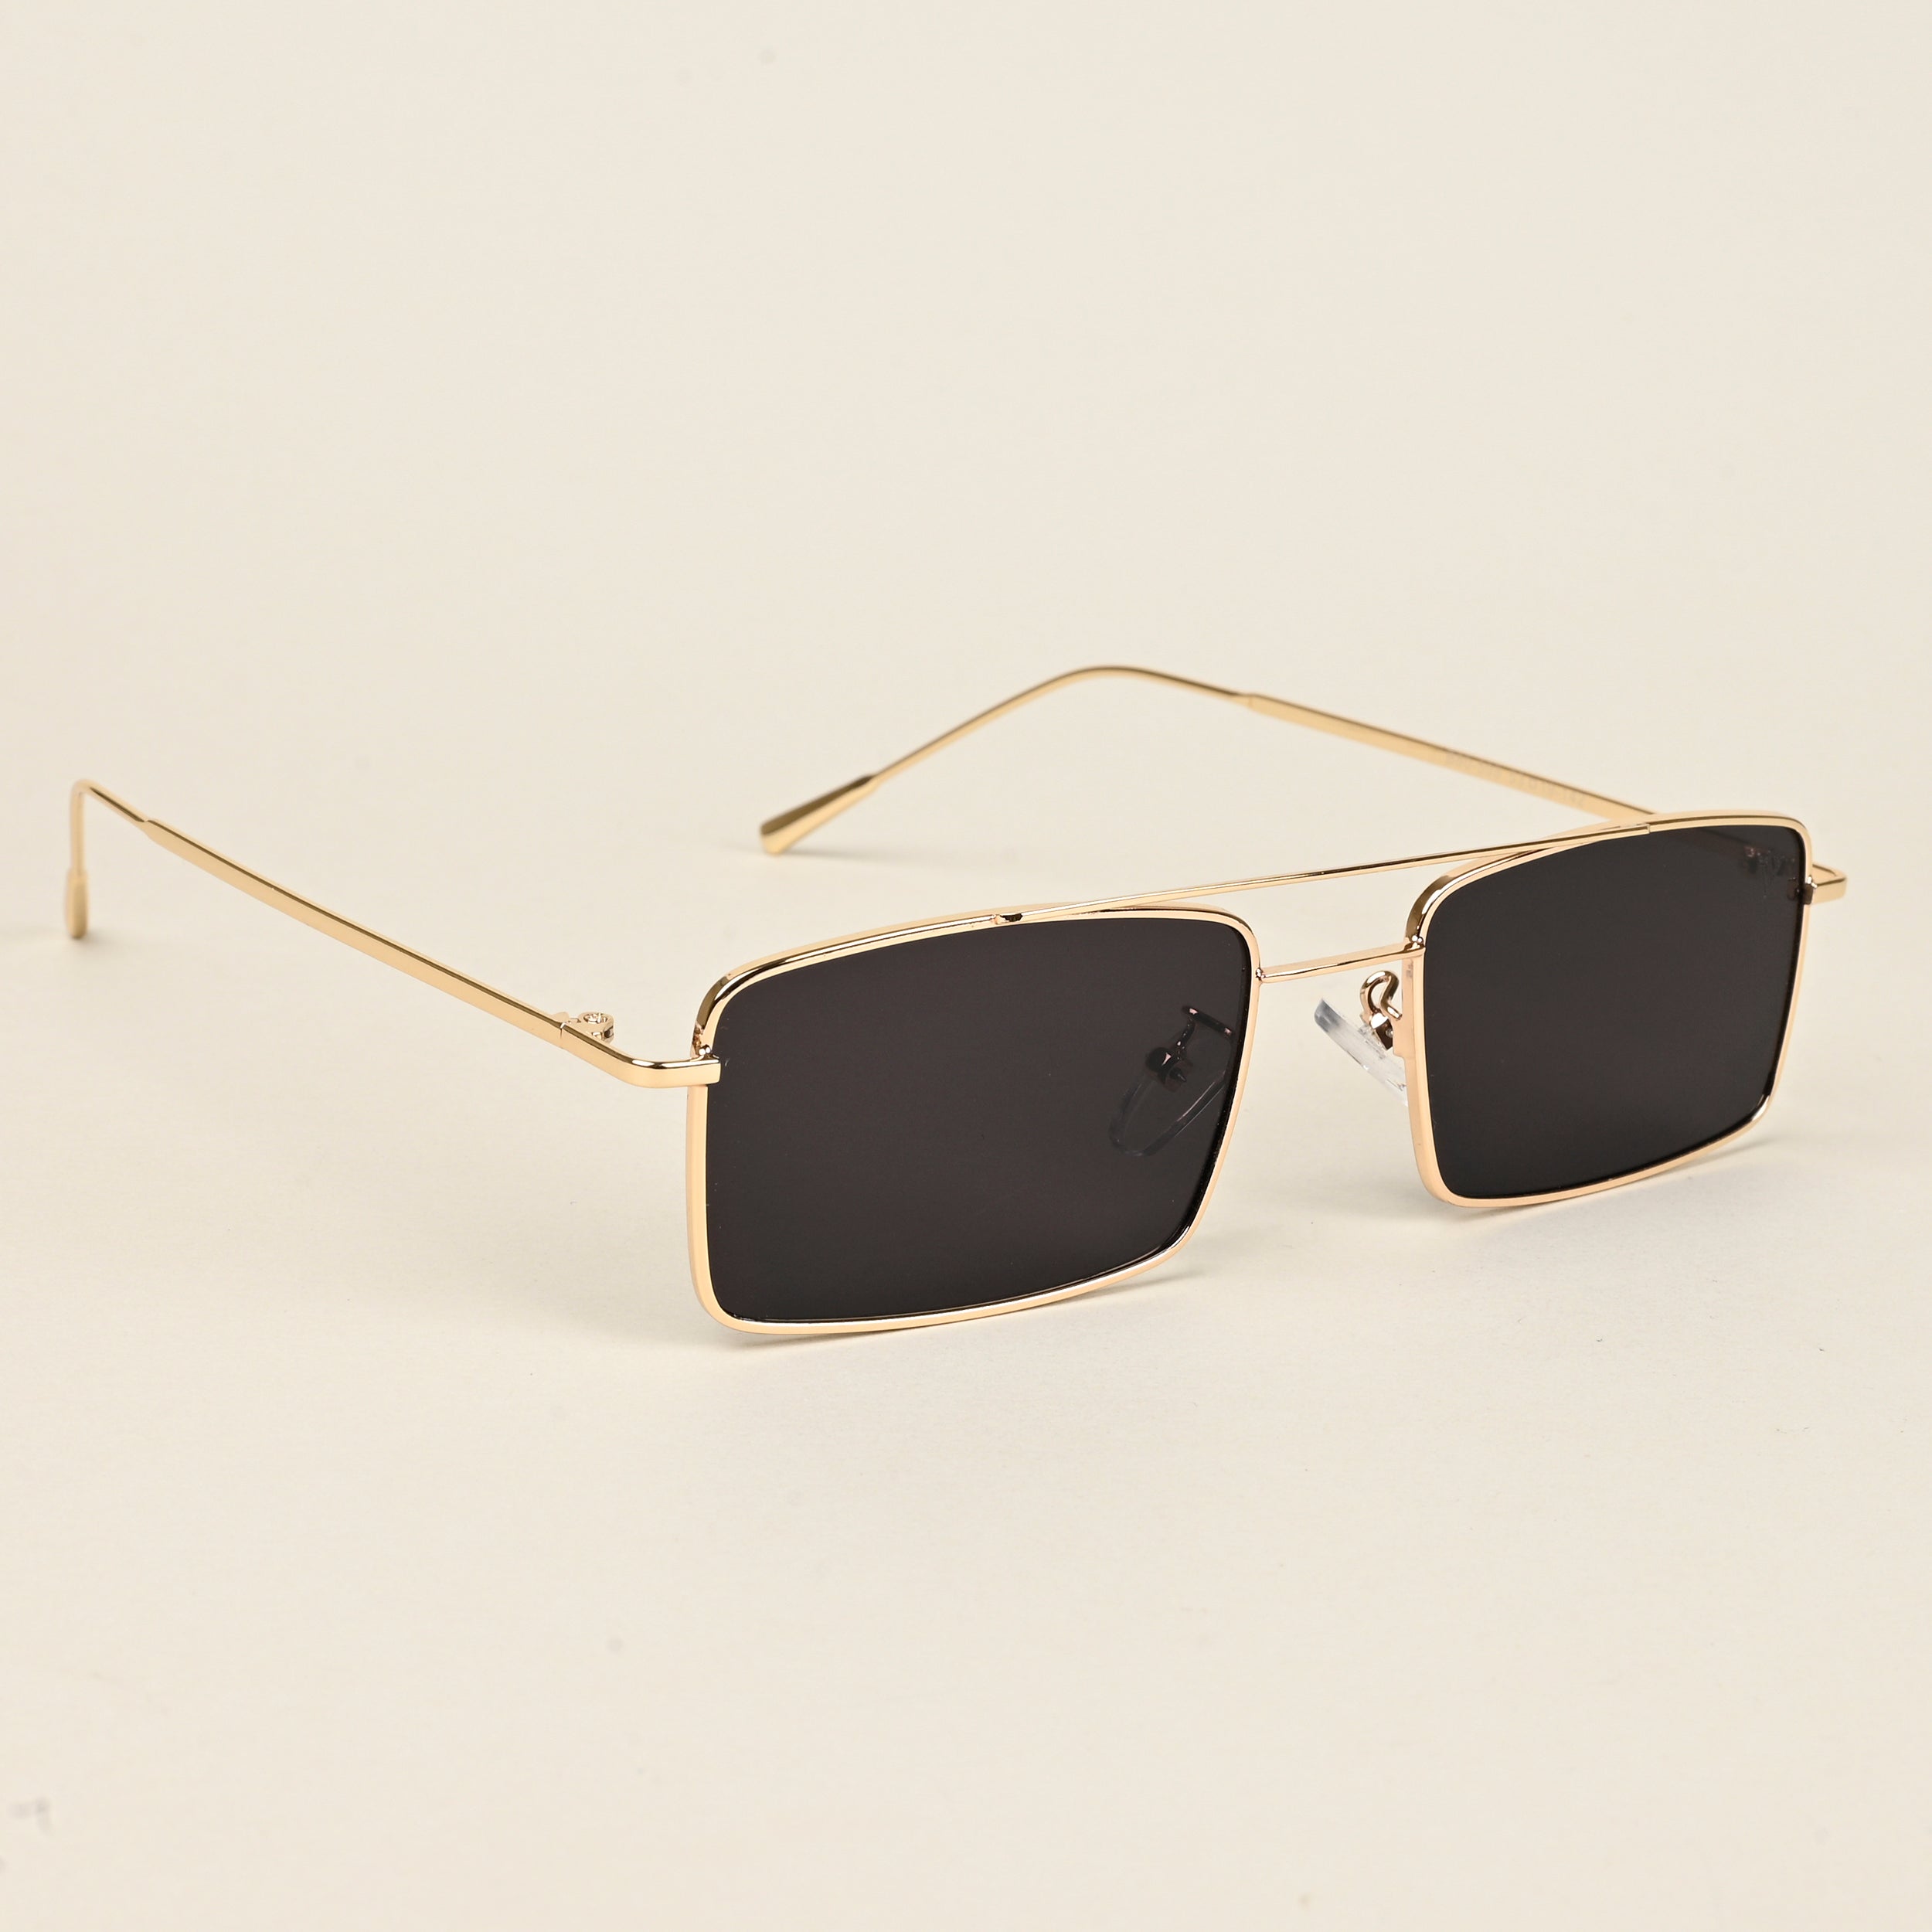 Voyage Rectangle Sunglasses for Men & Women (Black Lens | Golden Frame  - MG5191)